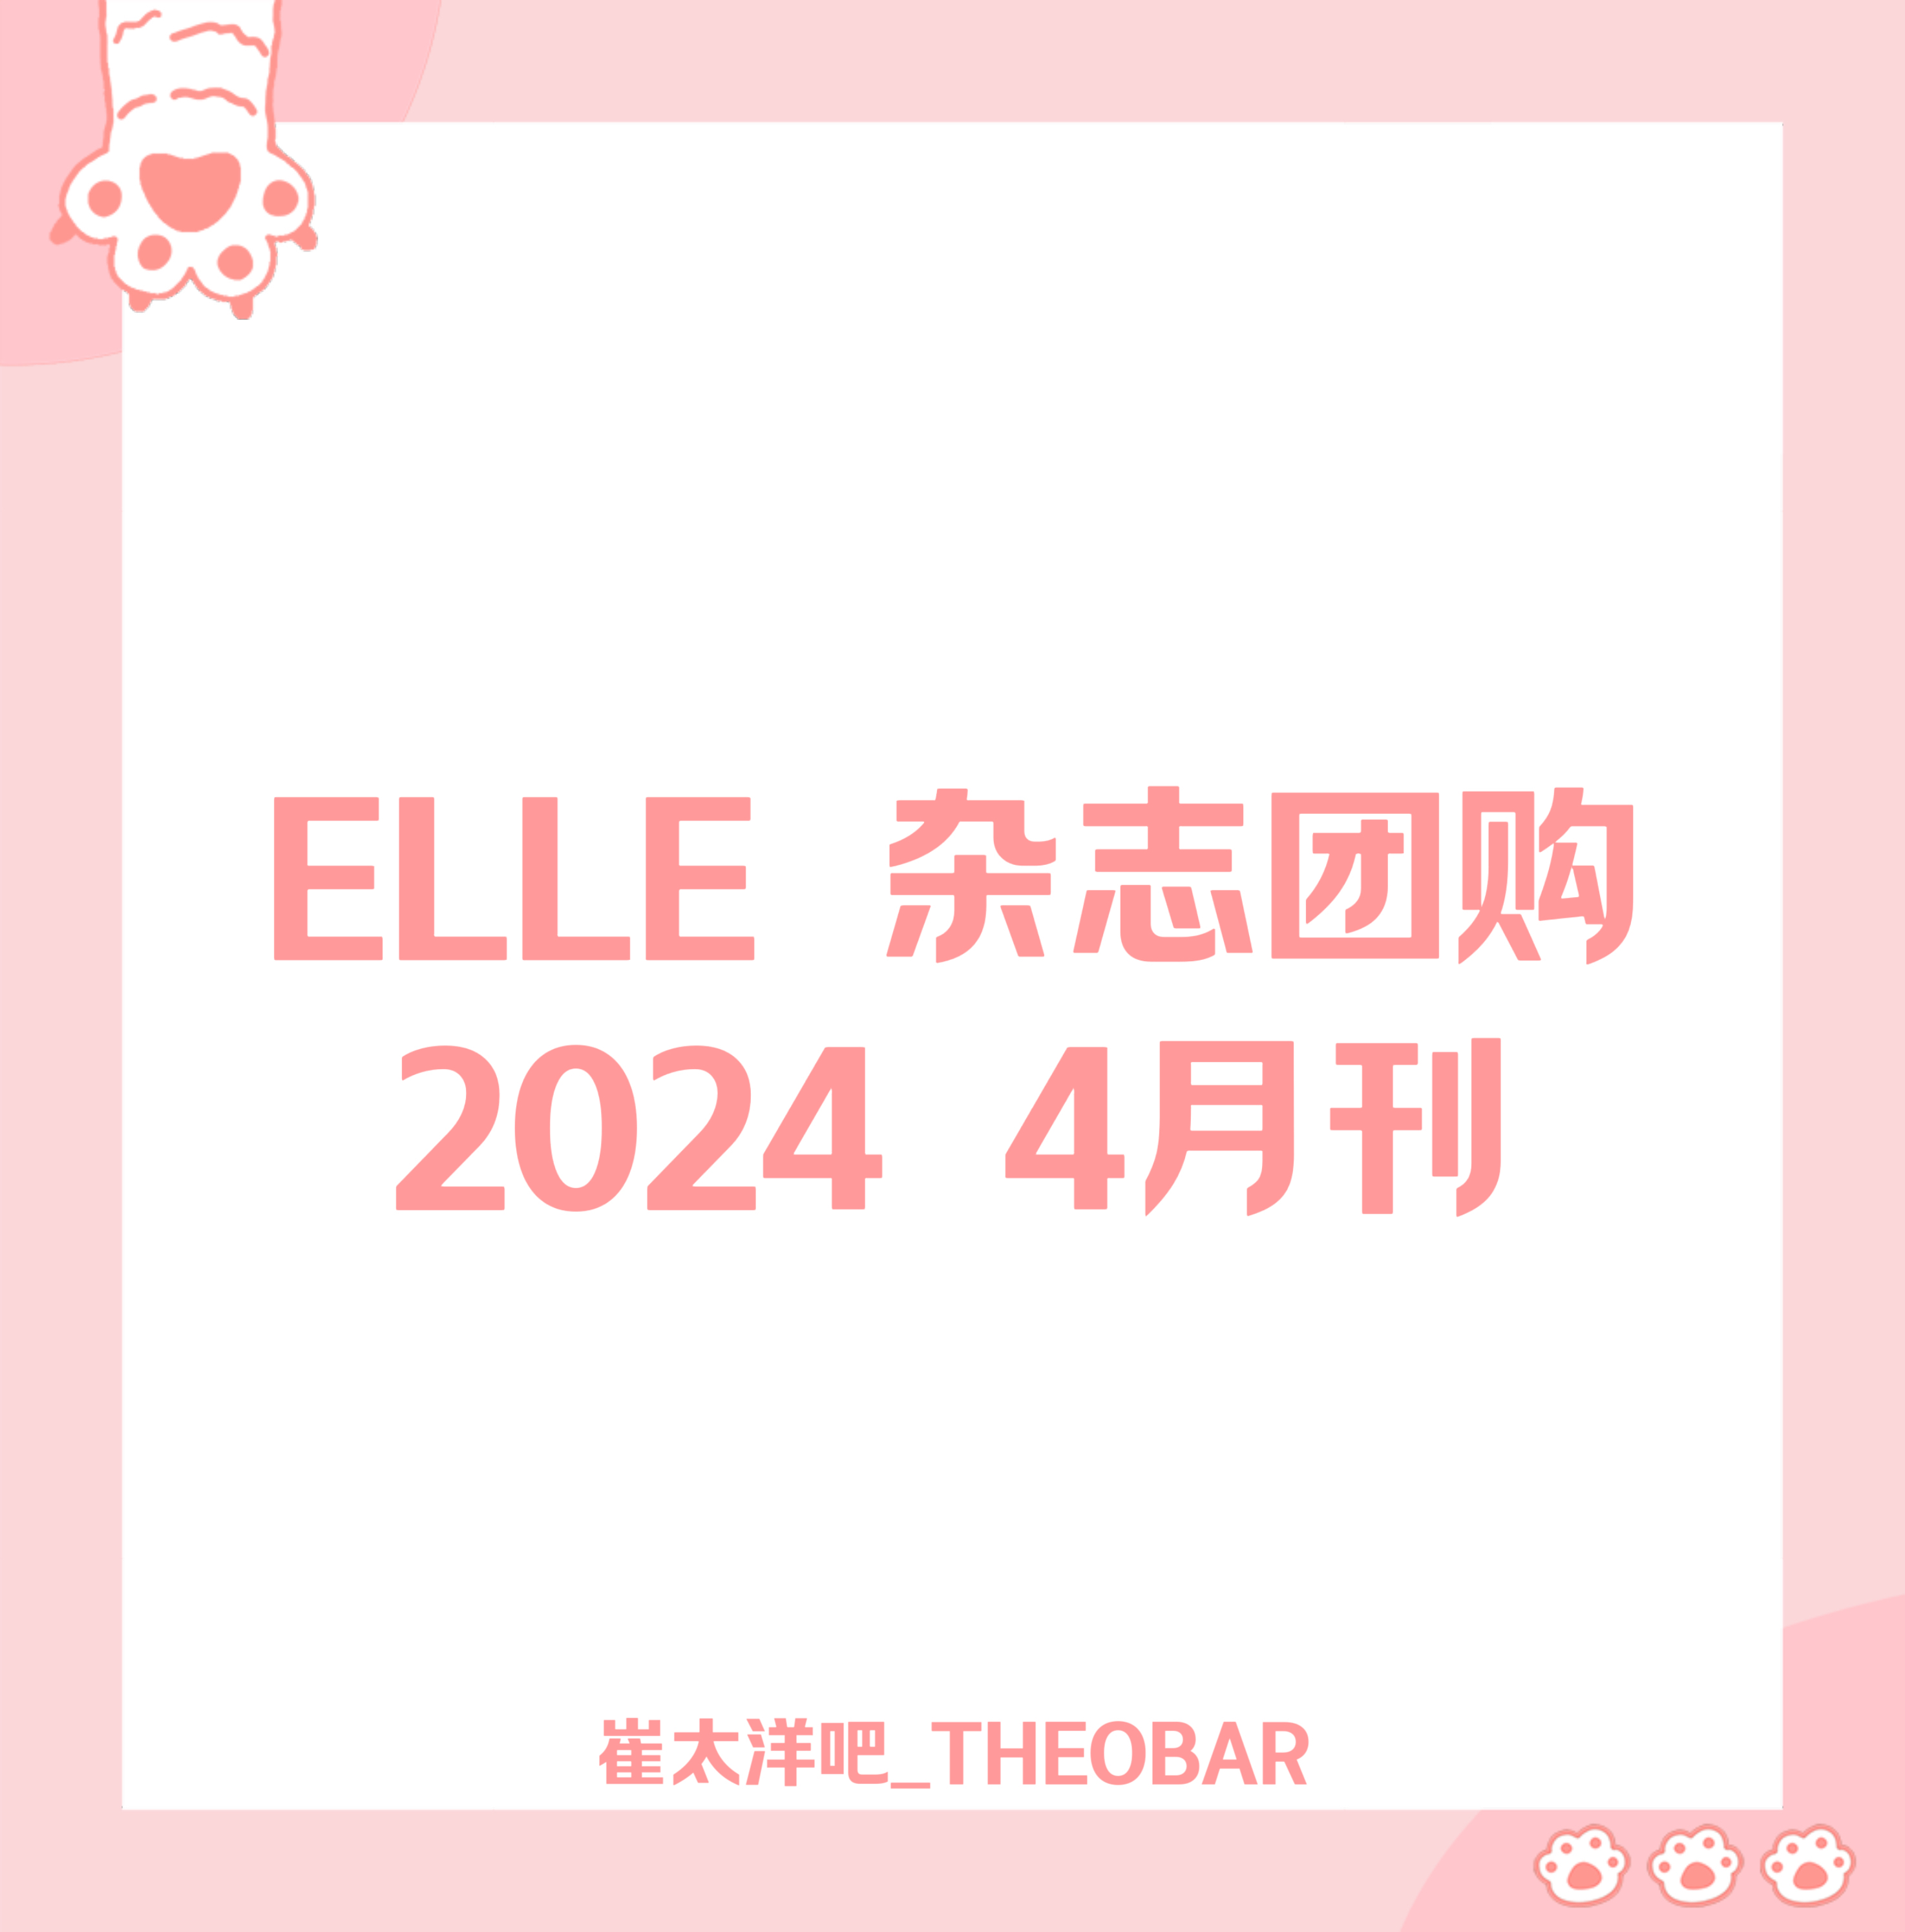 [全款] ELLE 2024.04 ( Contents : P1Harmony : THEO)_崔太洋吧_THEOBAR